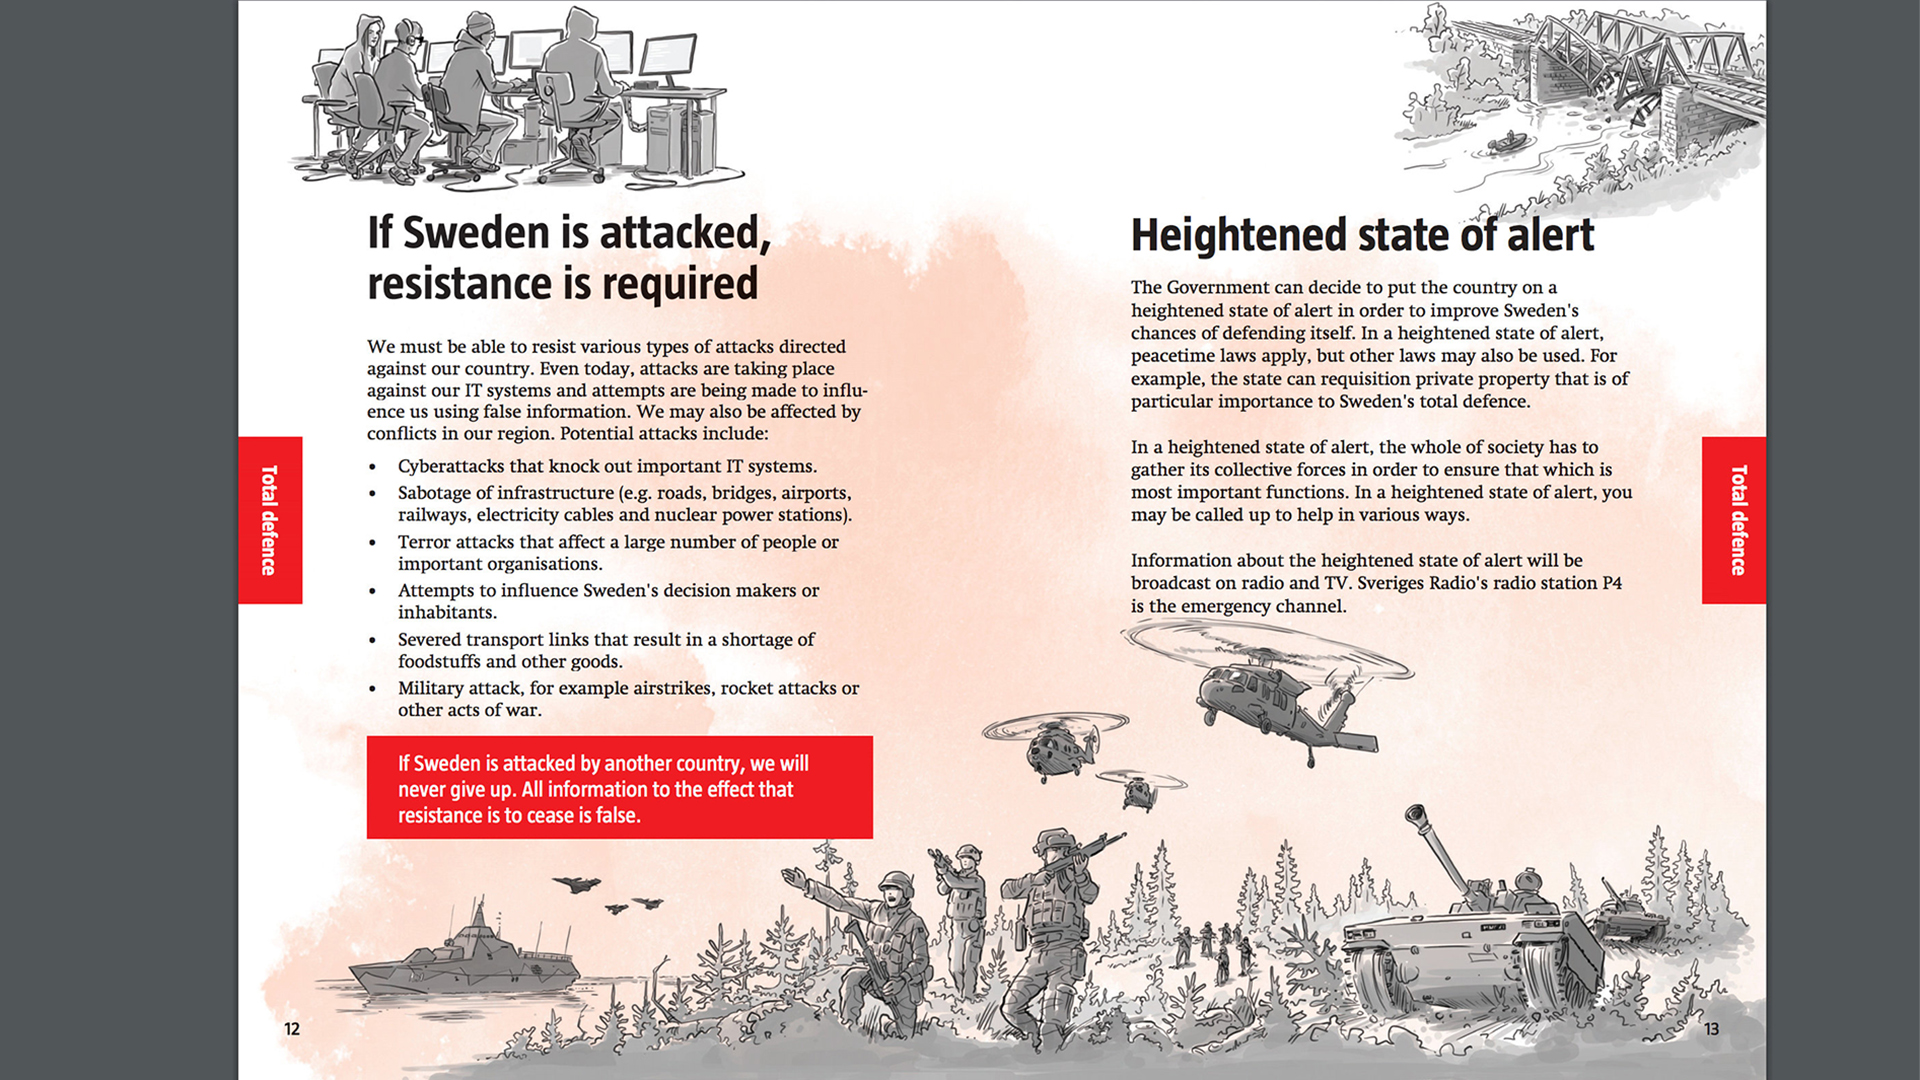 Seite 10 und 11 der Infobroschüre "Falls Krisen oder Krieg kommt". | REUTERS